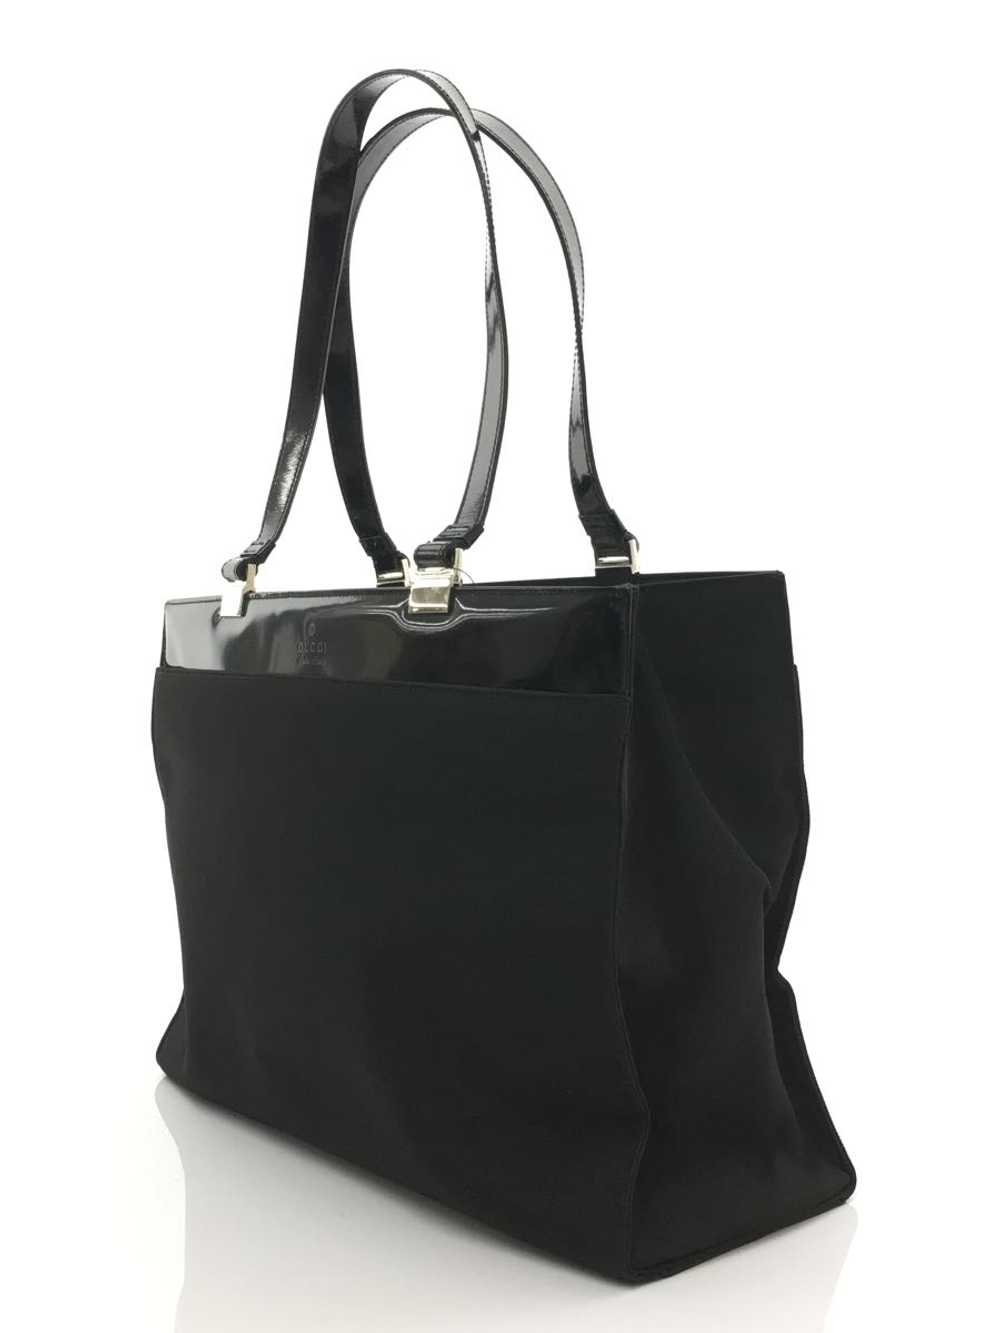 [Japan Used Bag] Used Gucci Tote Bag/Nylon/Blk Bag - image 2